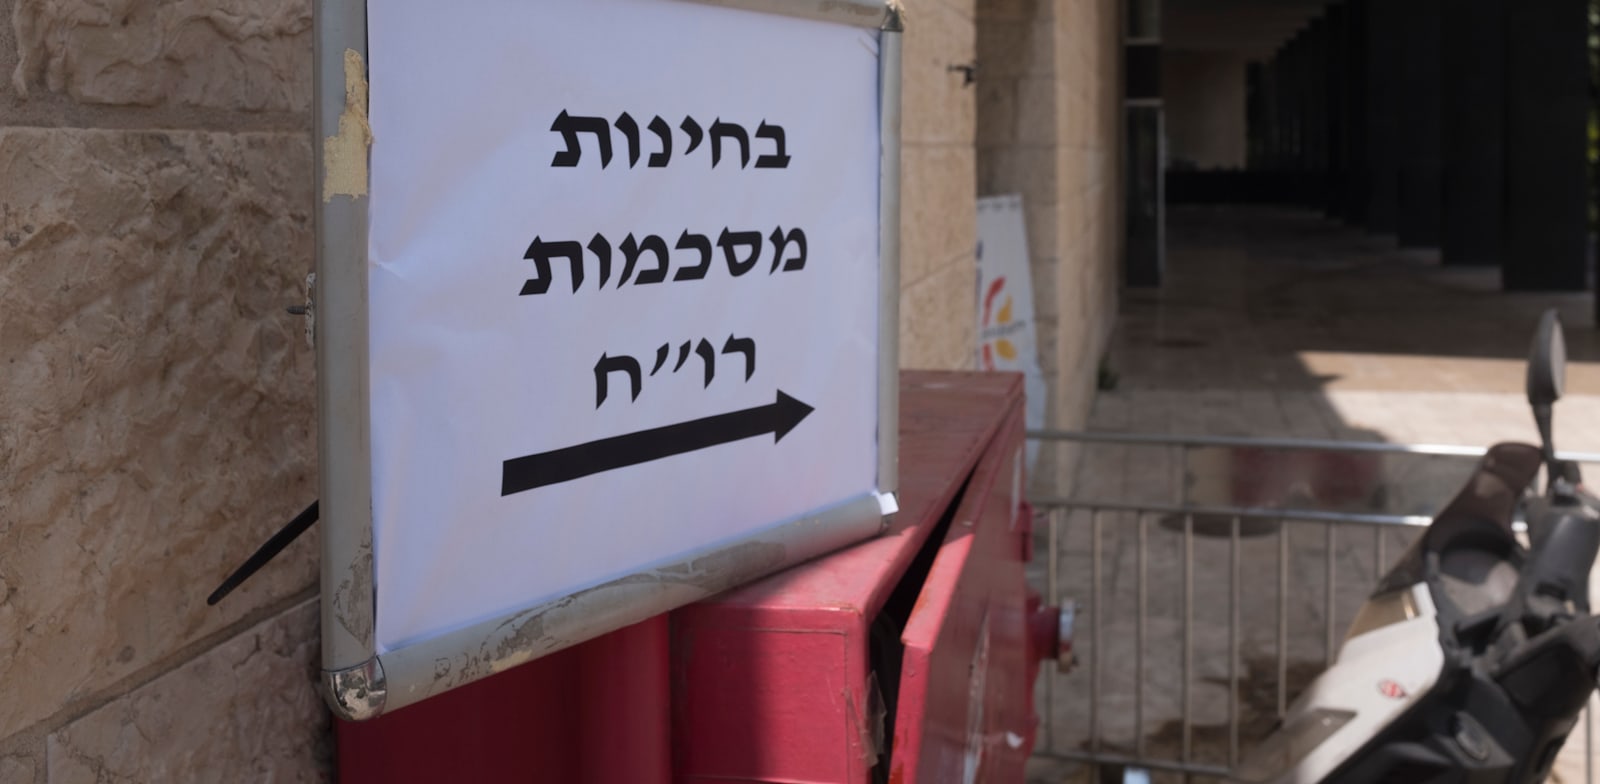 בחינות להסמכה לשכת רואי חשבון בבנייני האומה בירושלים / צילום: ליאור מזרחי